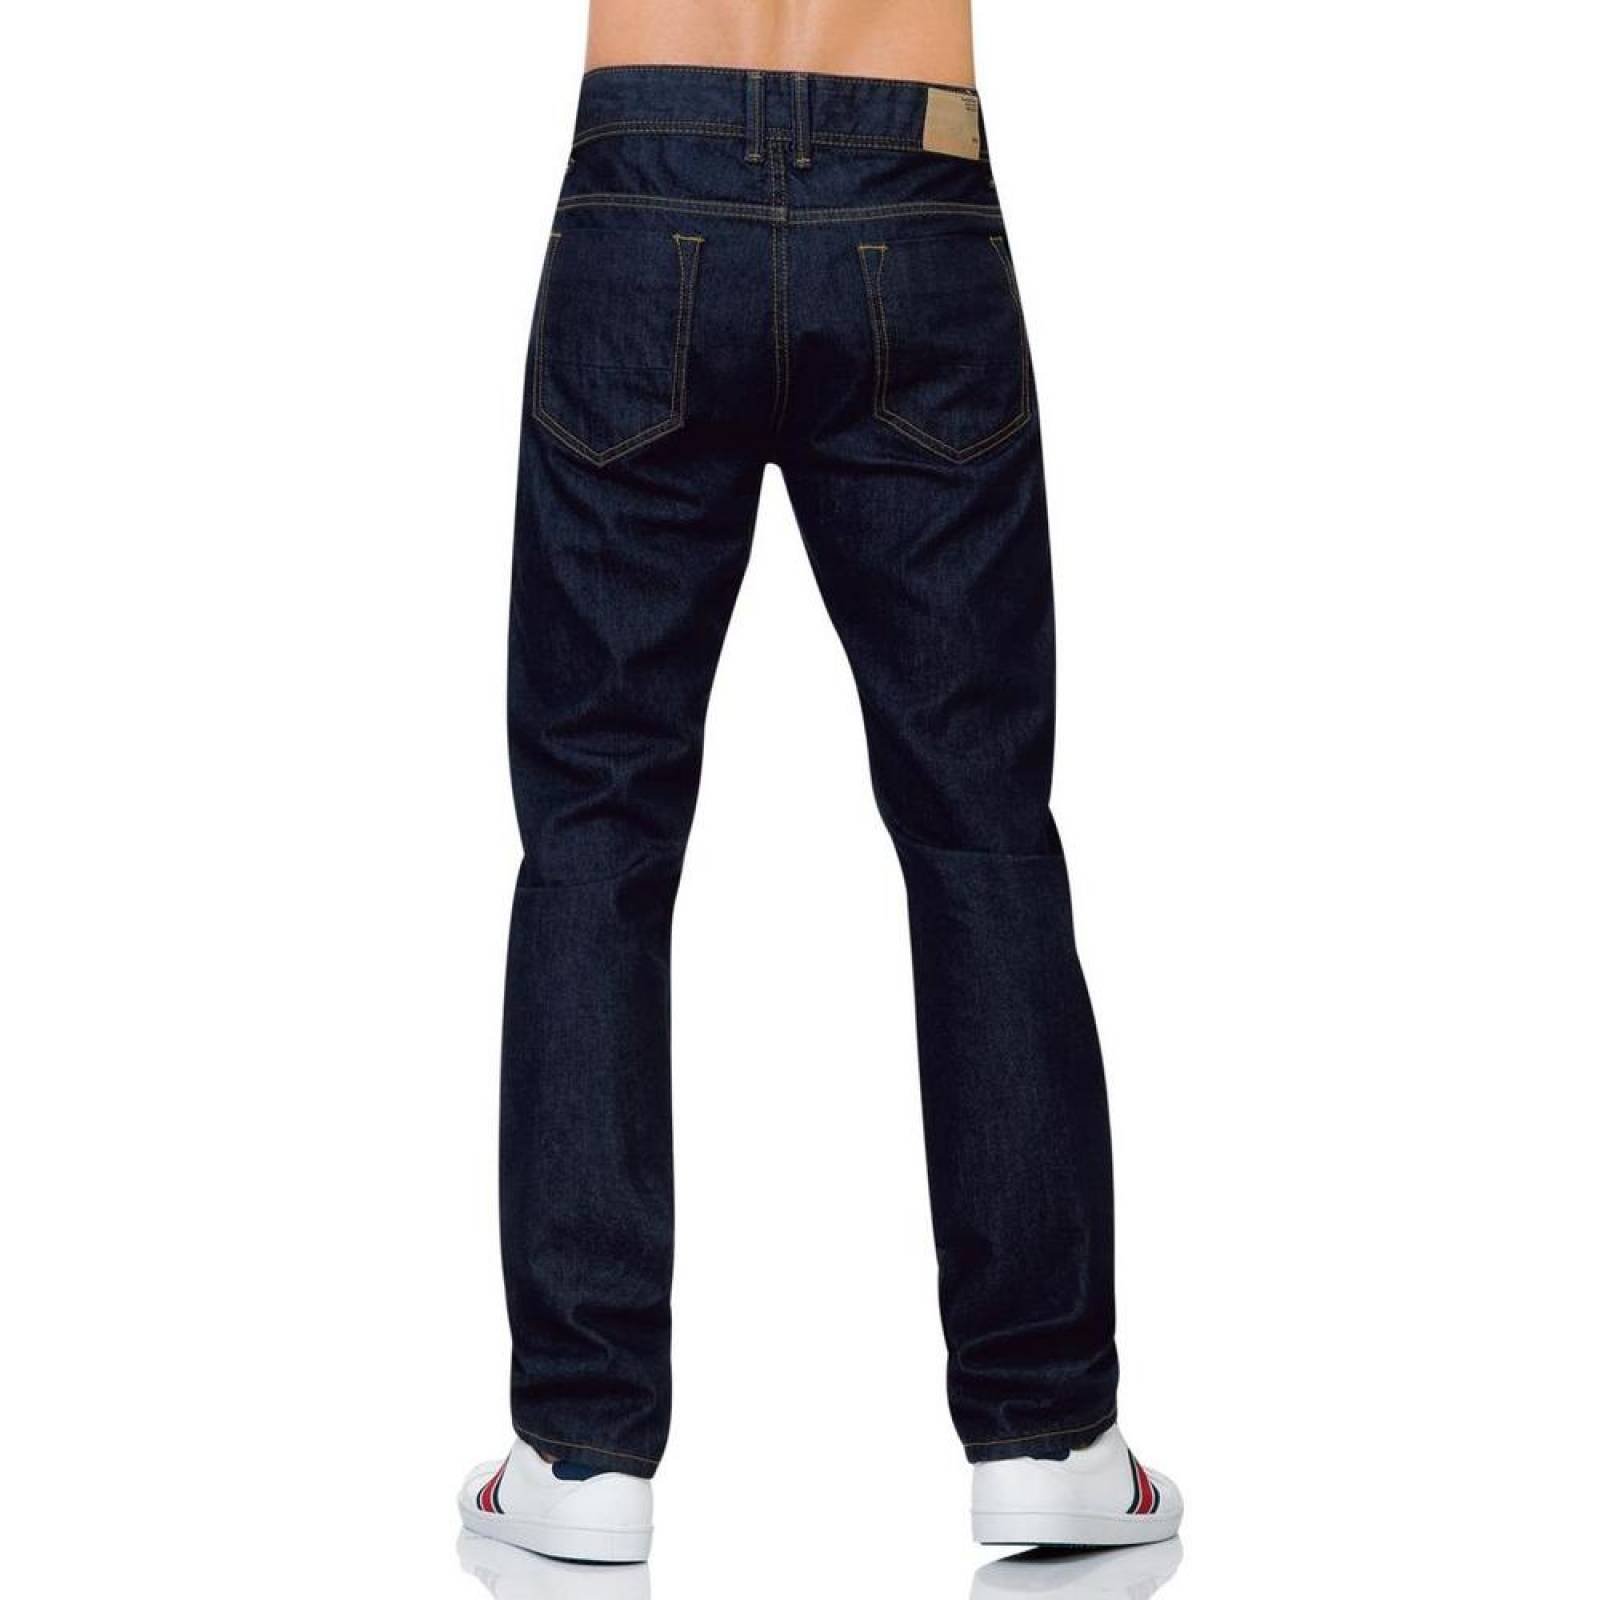 Jeans Básico Hombre Salvaje Tentación Indigo 63100140 Mezclilla 